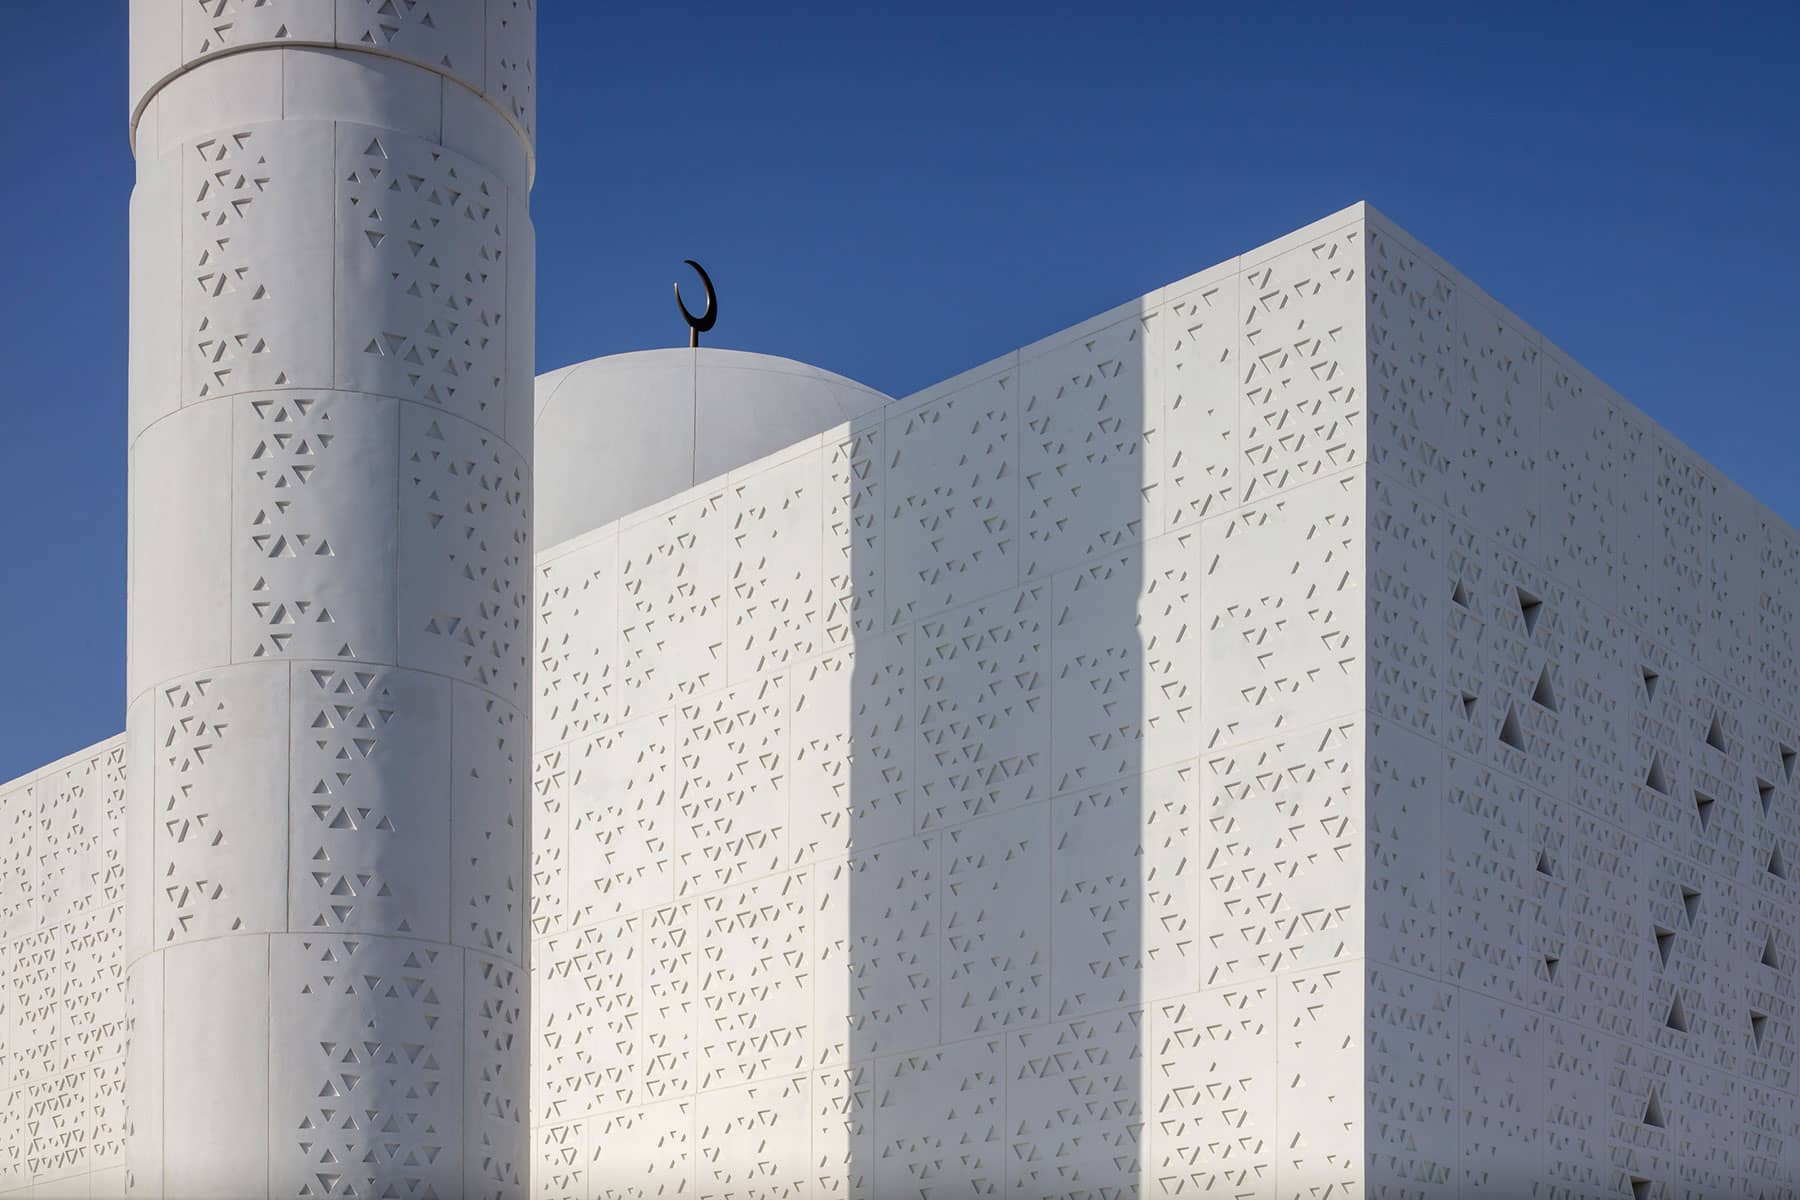 Architecture Photography Dubai: Light & Shadow, a close up of Mosque of light façade, Dubai.